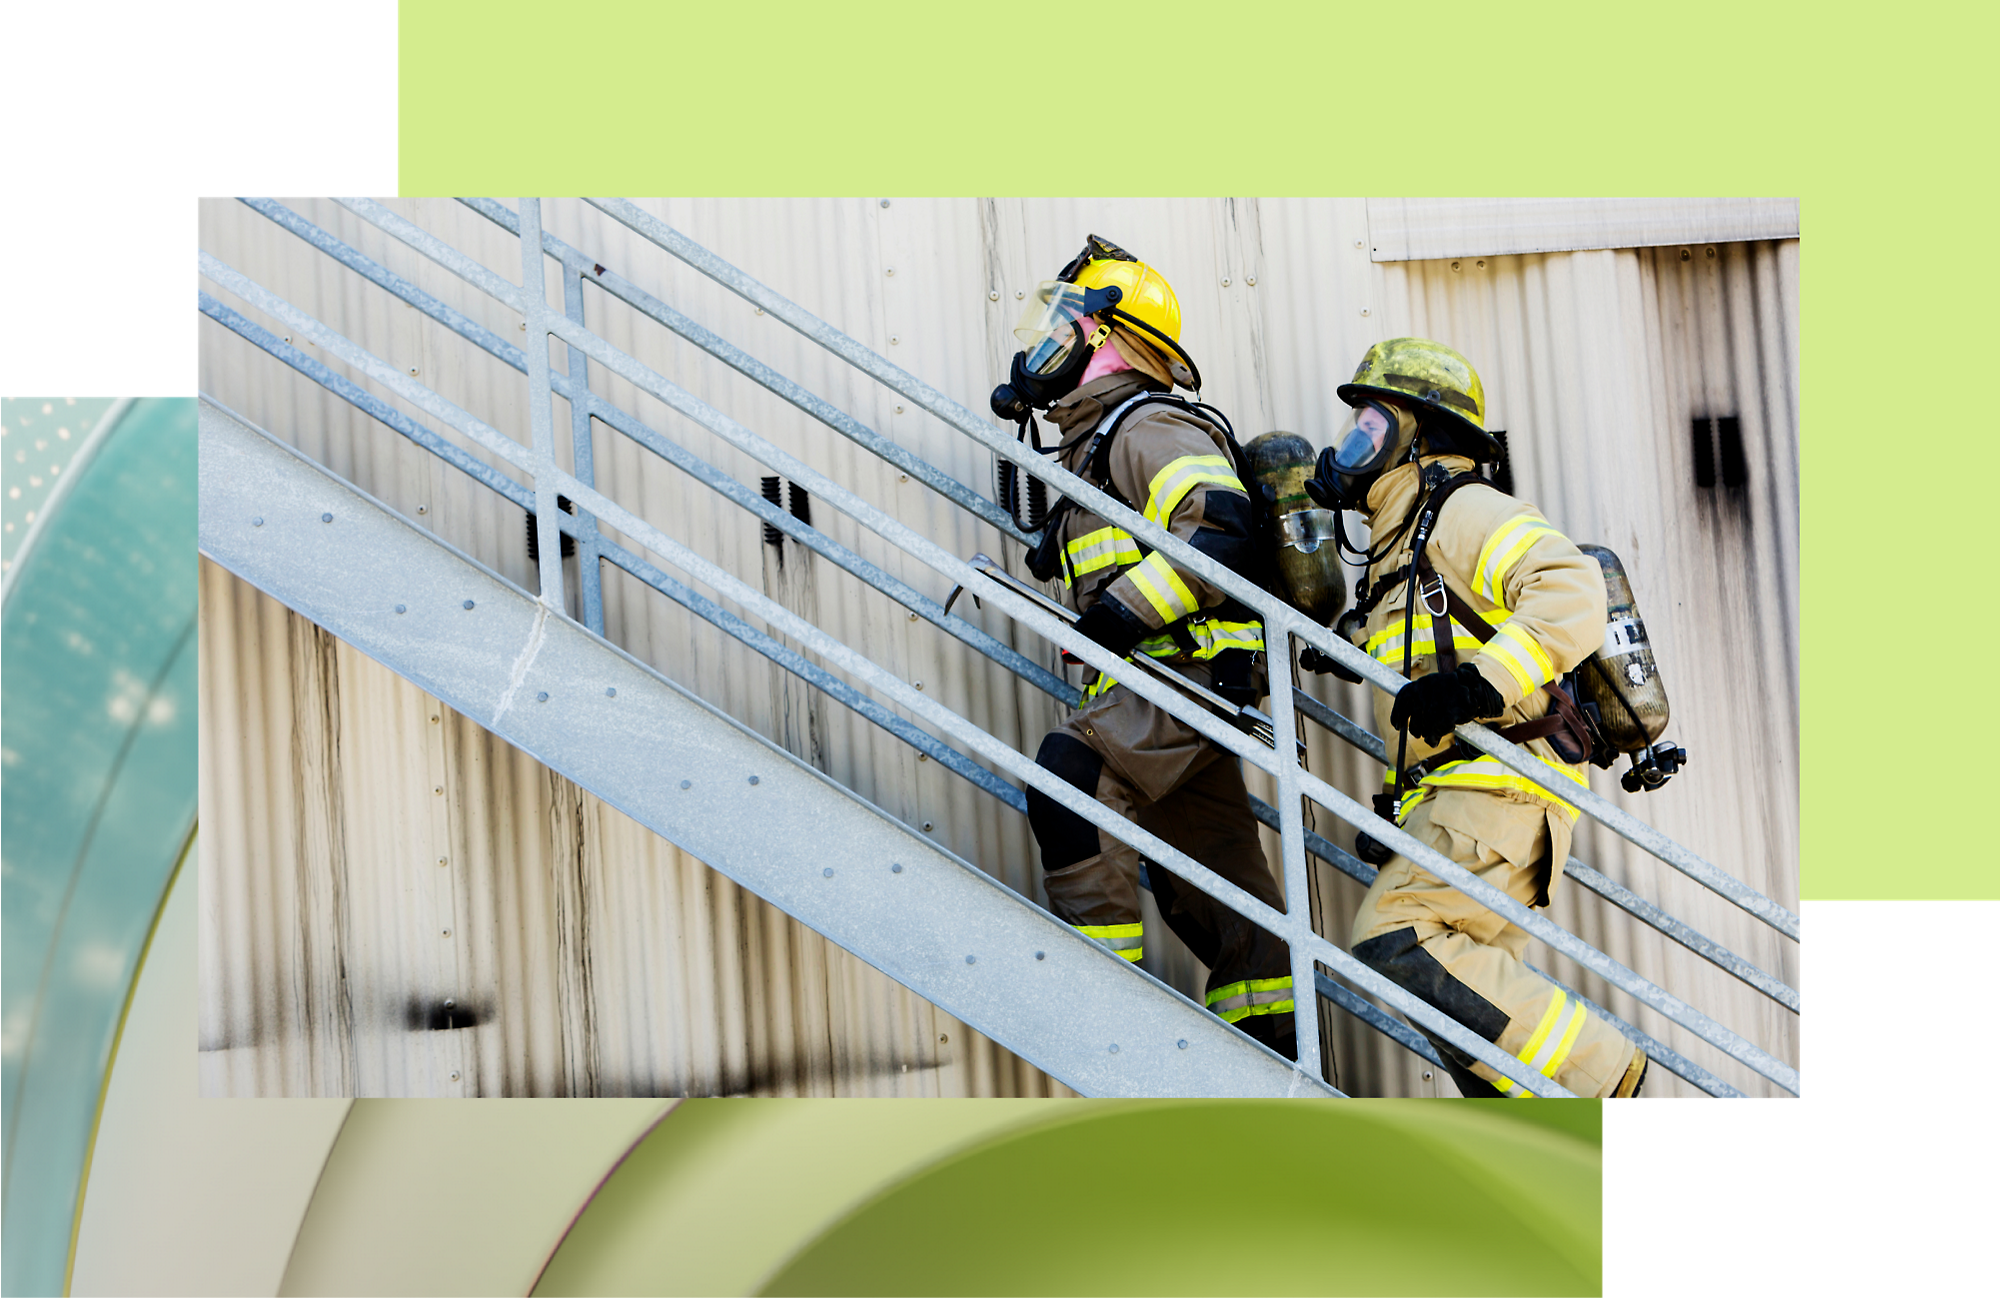 Двоє пожежників у спорядженні піднімаються металевими сходами під час навчань із реагування на інциденти.